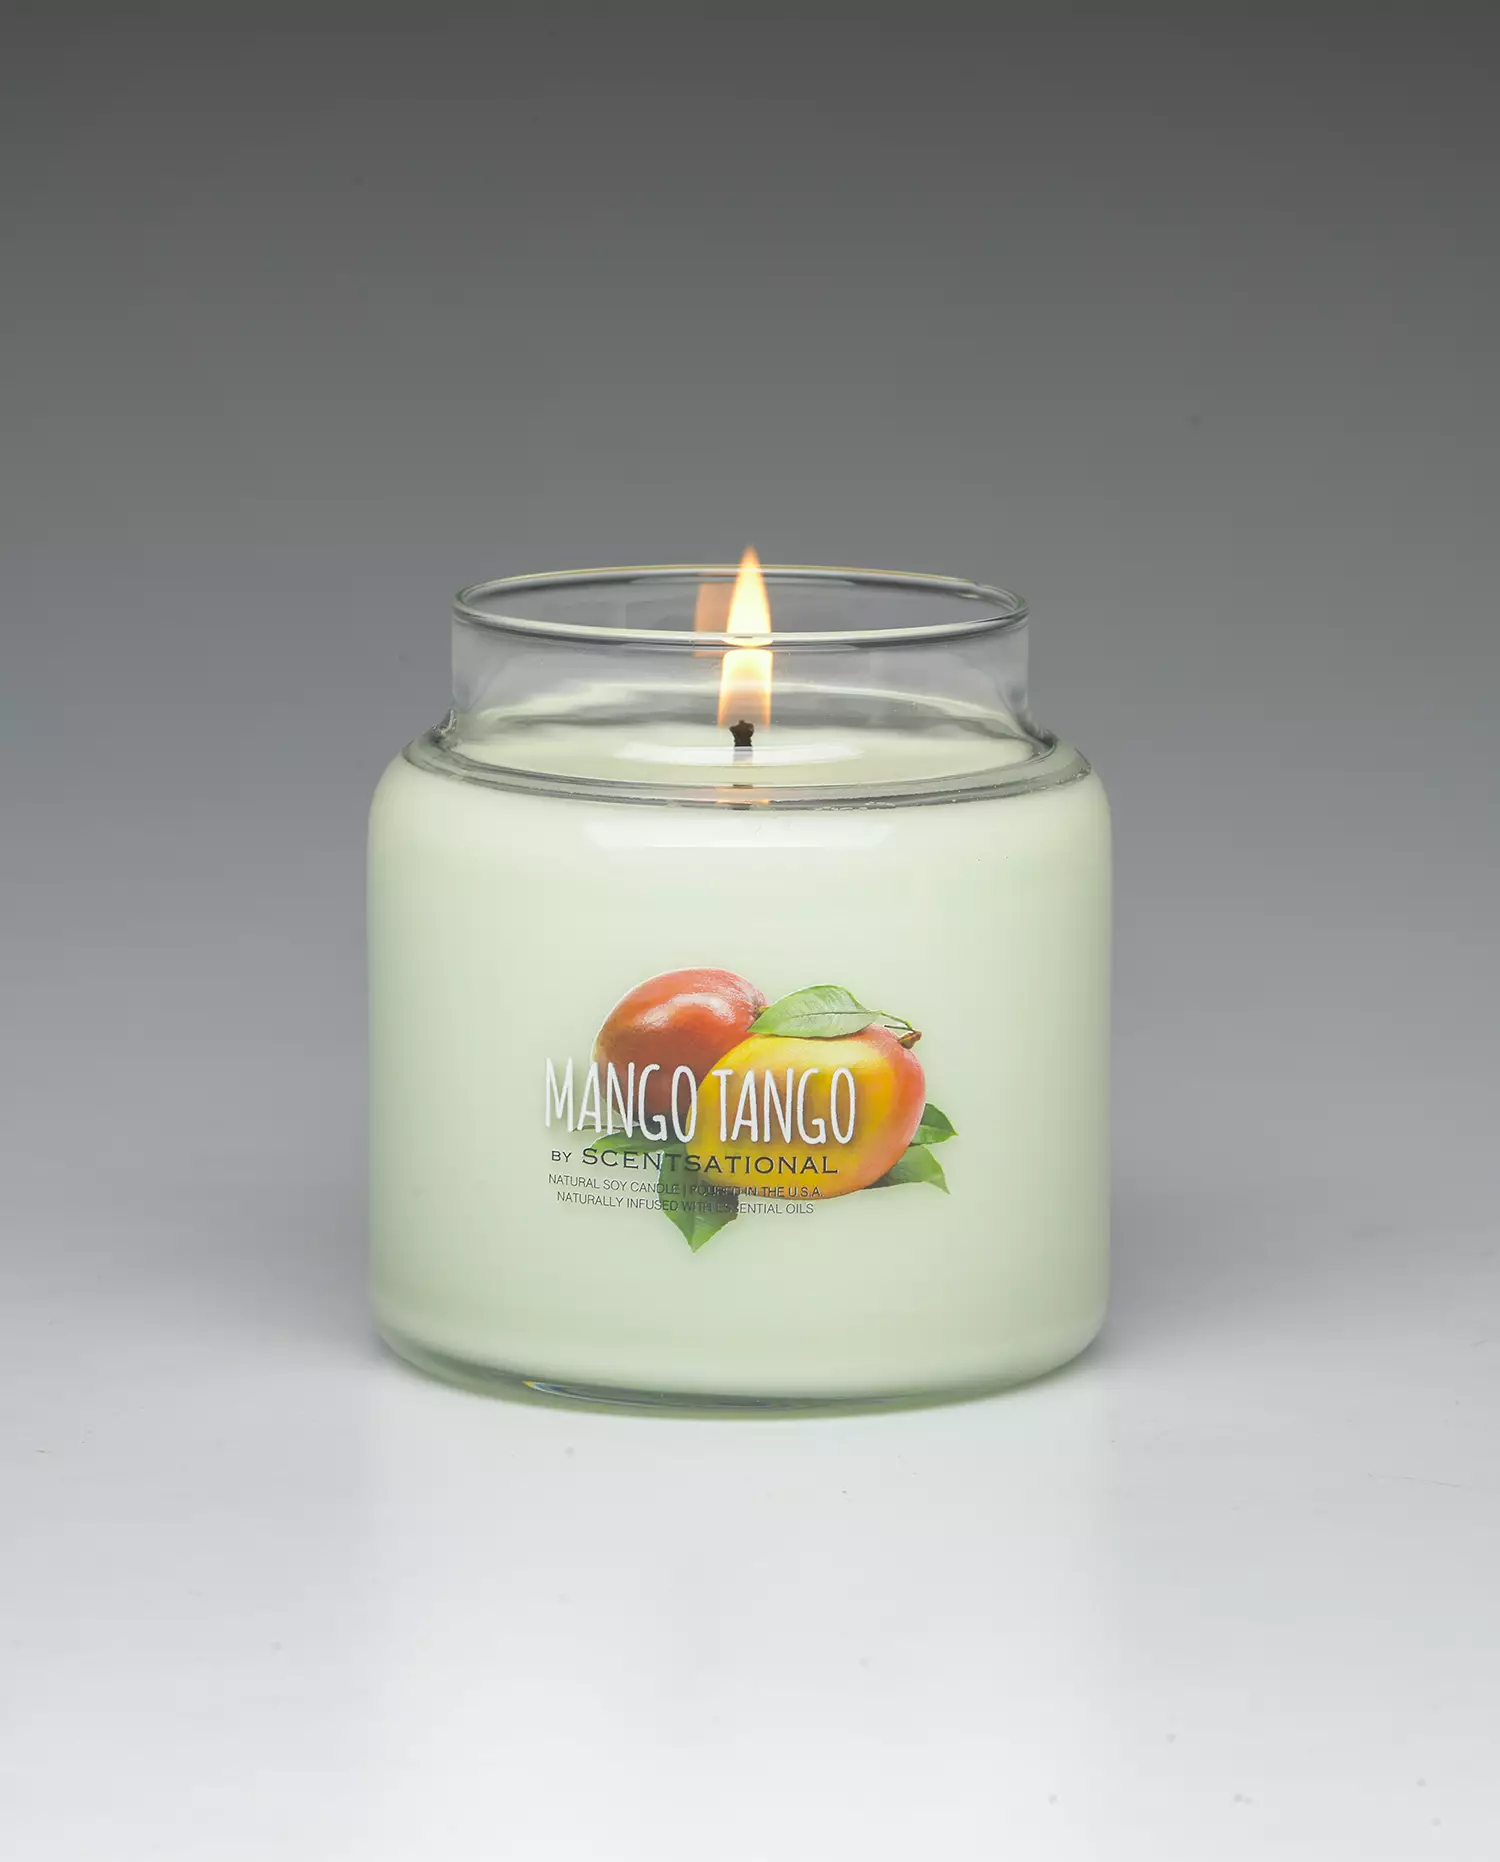 Mango Tango 19oz scented candle burning